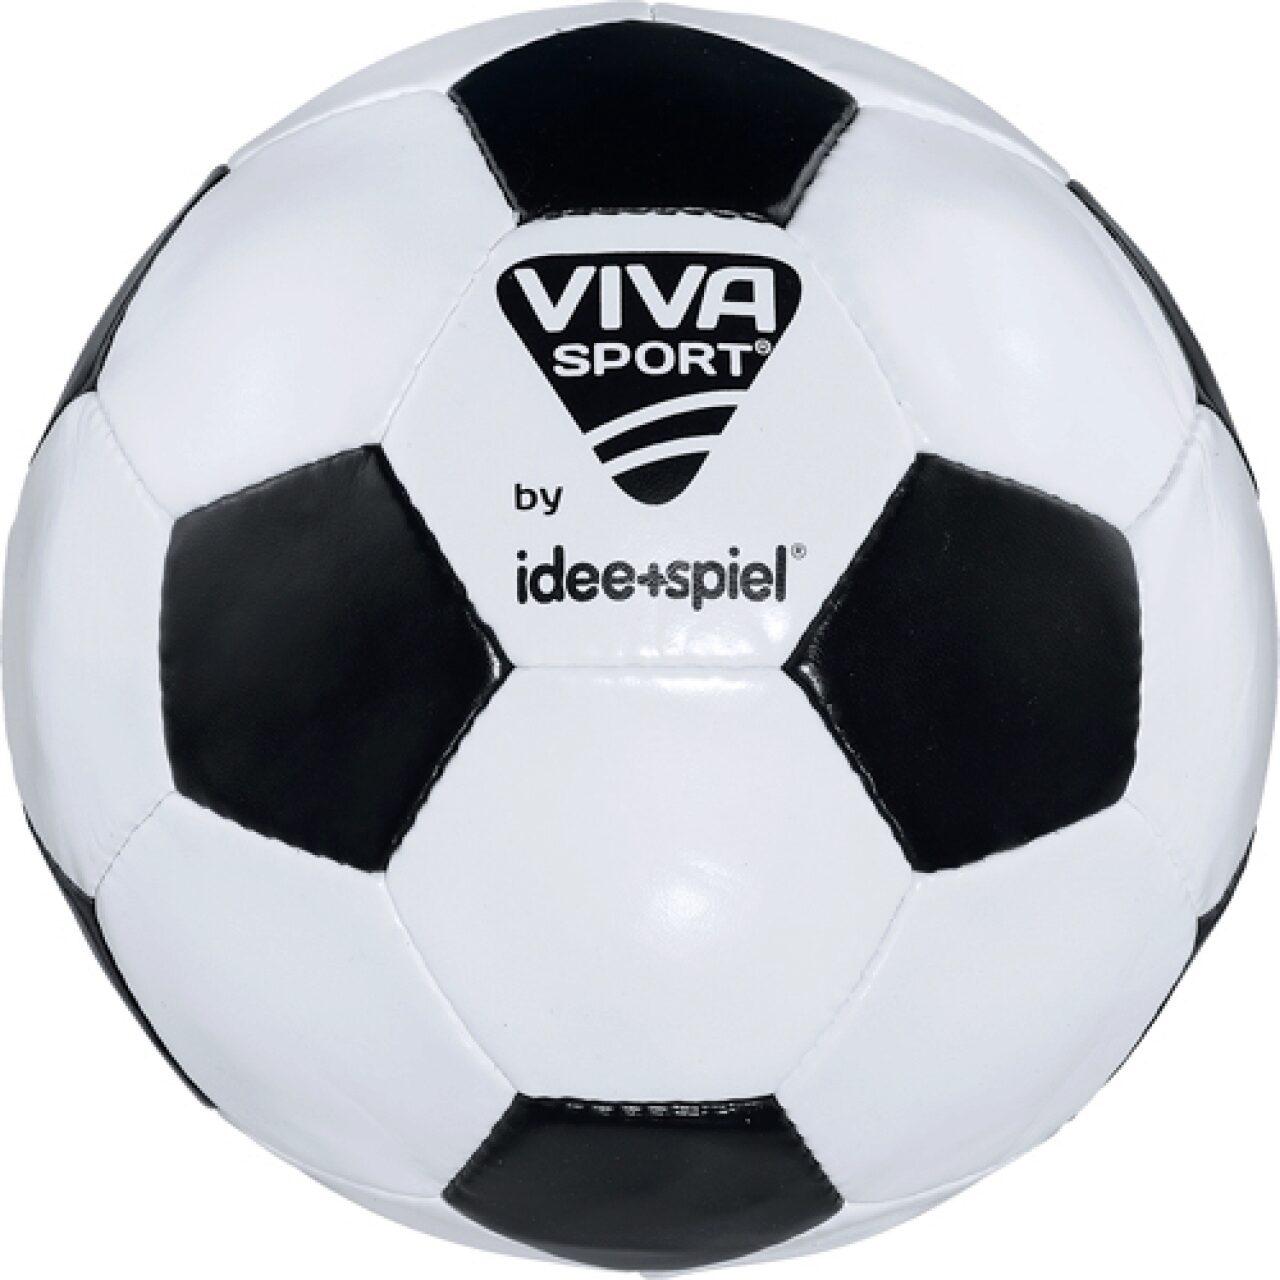 VIVA SPORT - Fußball